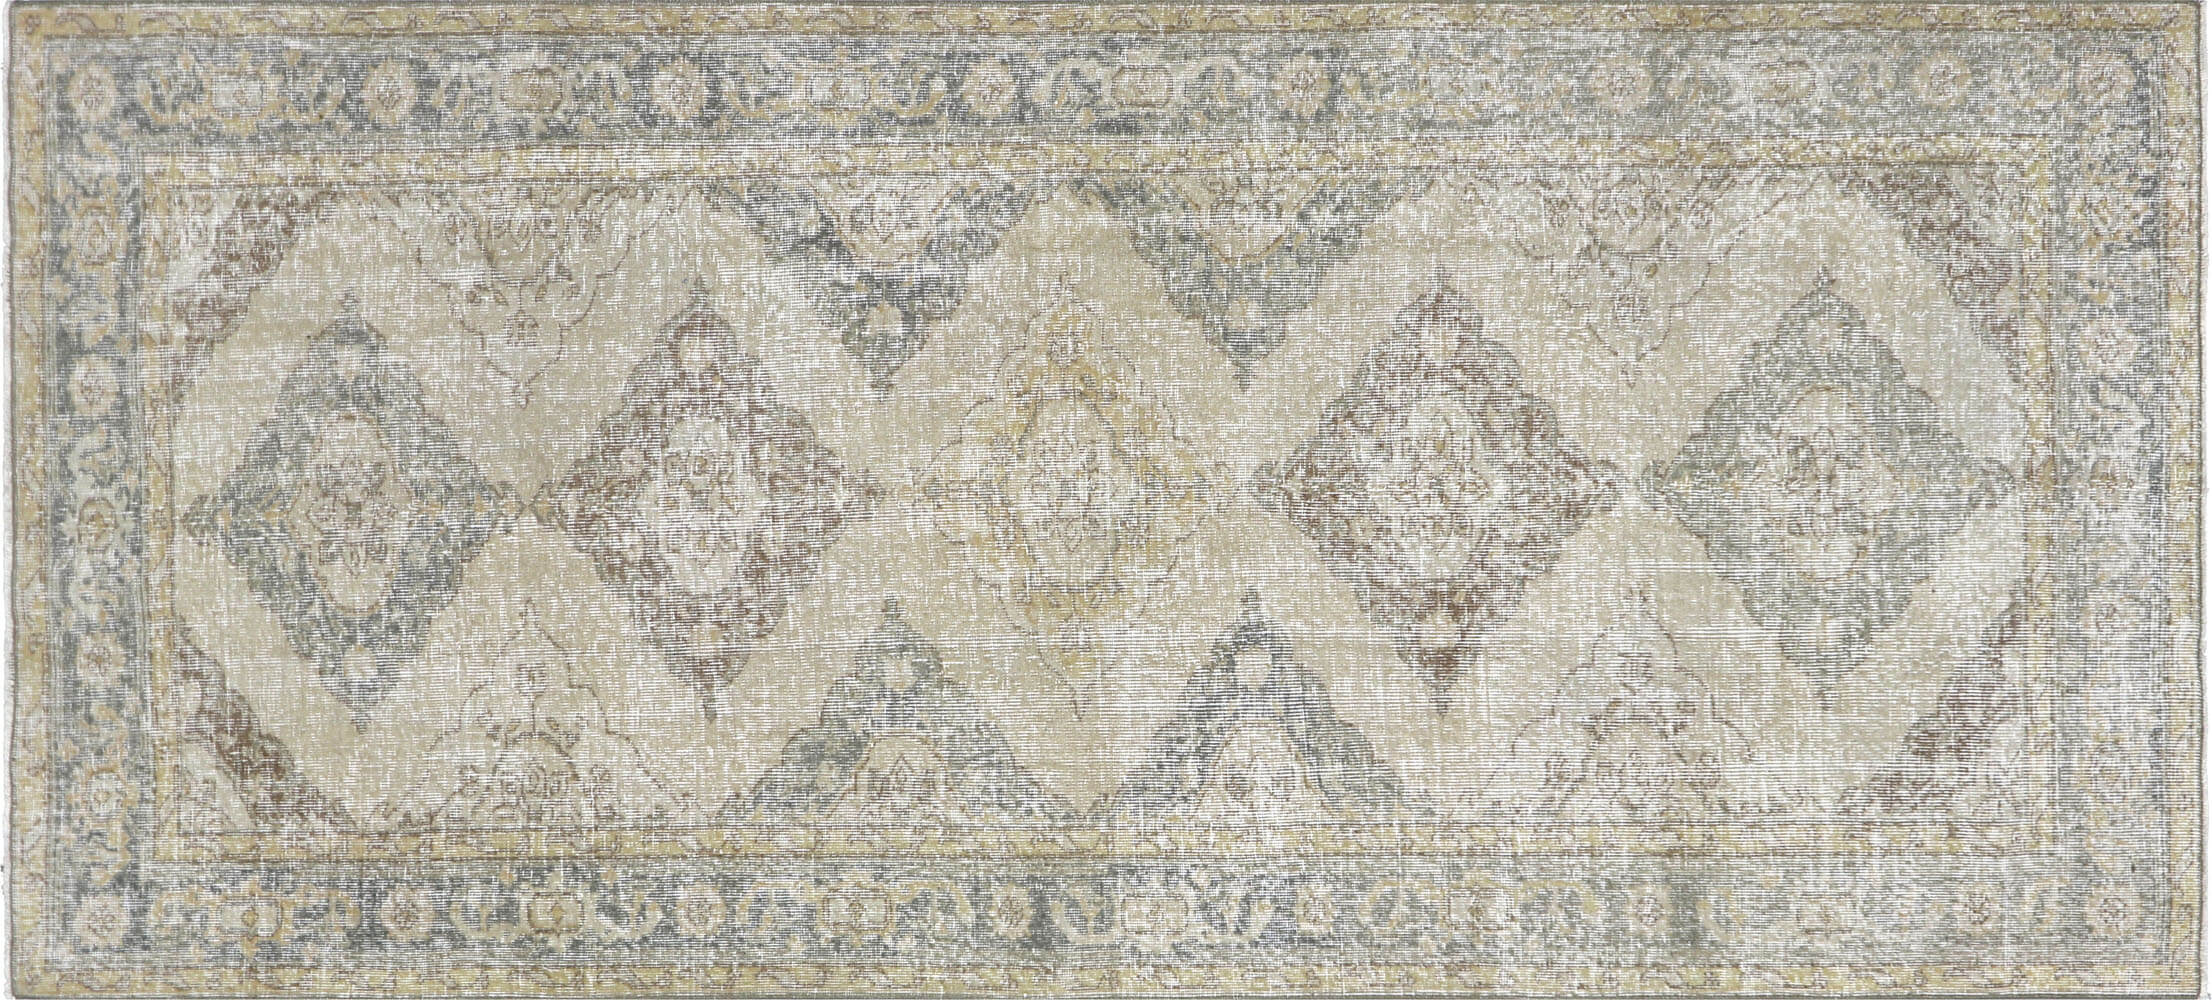 Vintage Turkish Oushak Carpet - 4'10" x 10'8"